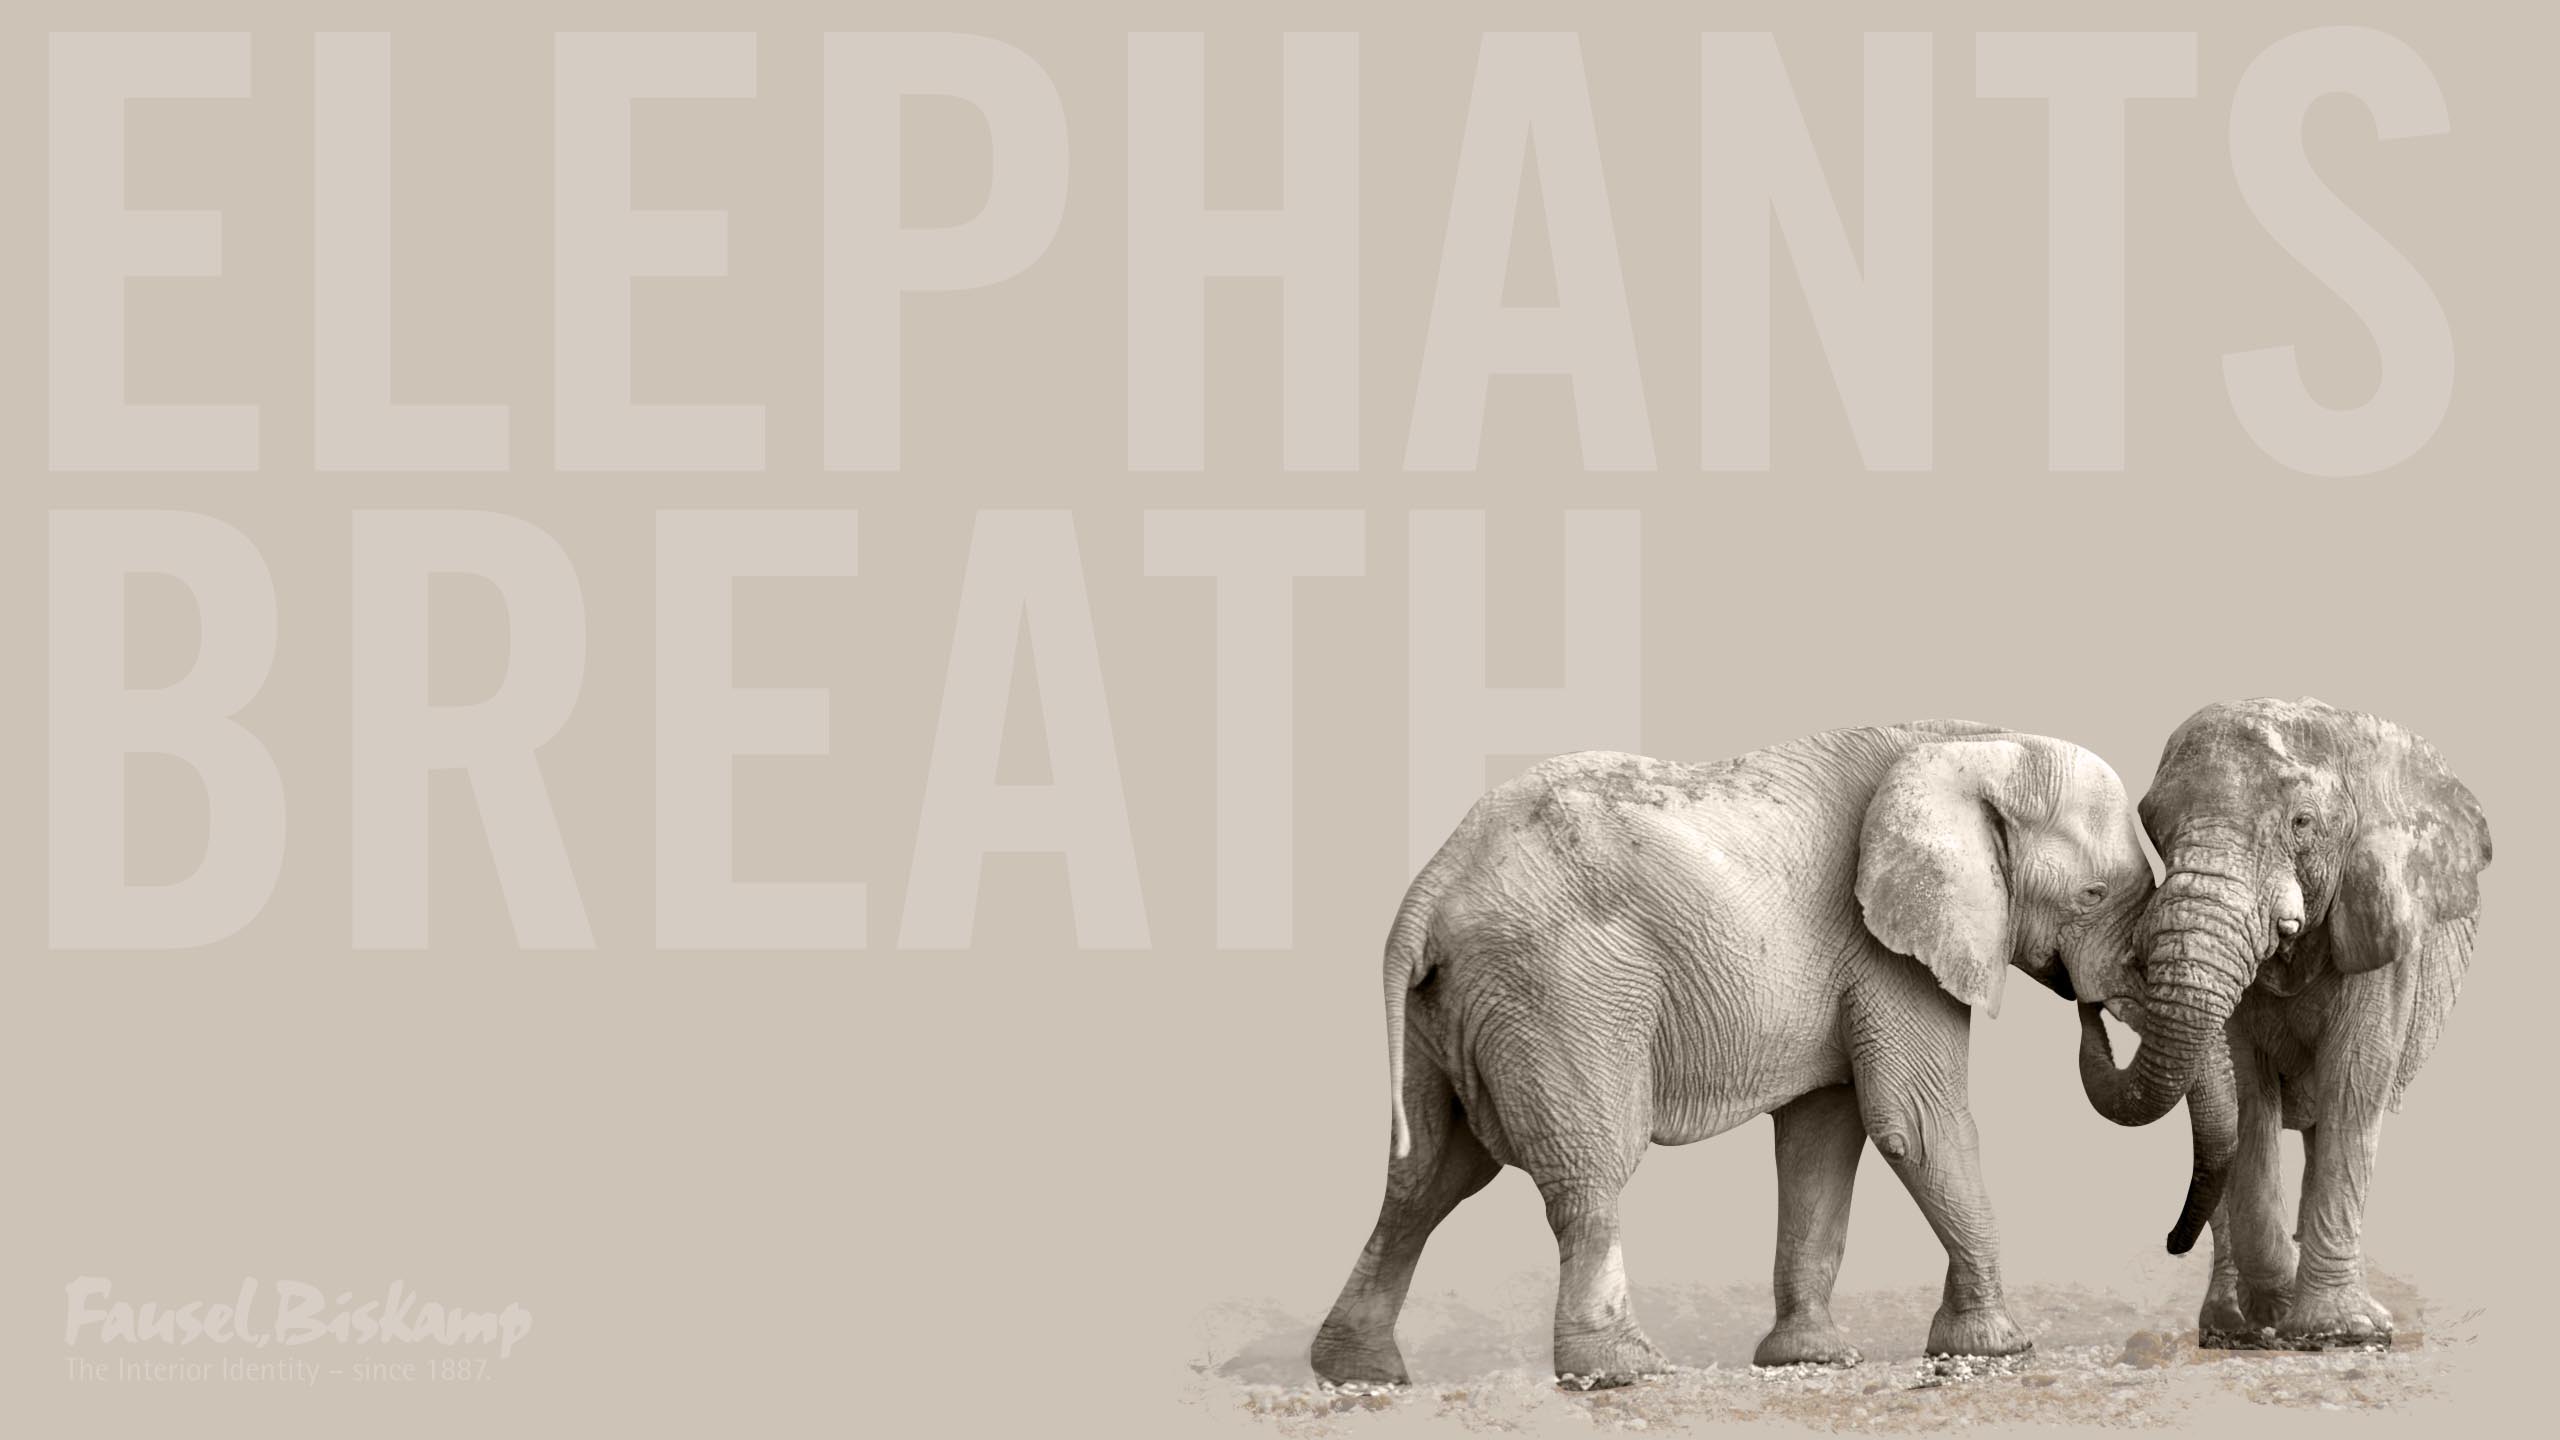 Elephant's Breath – Wallpaper von Fausel,Biskamp